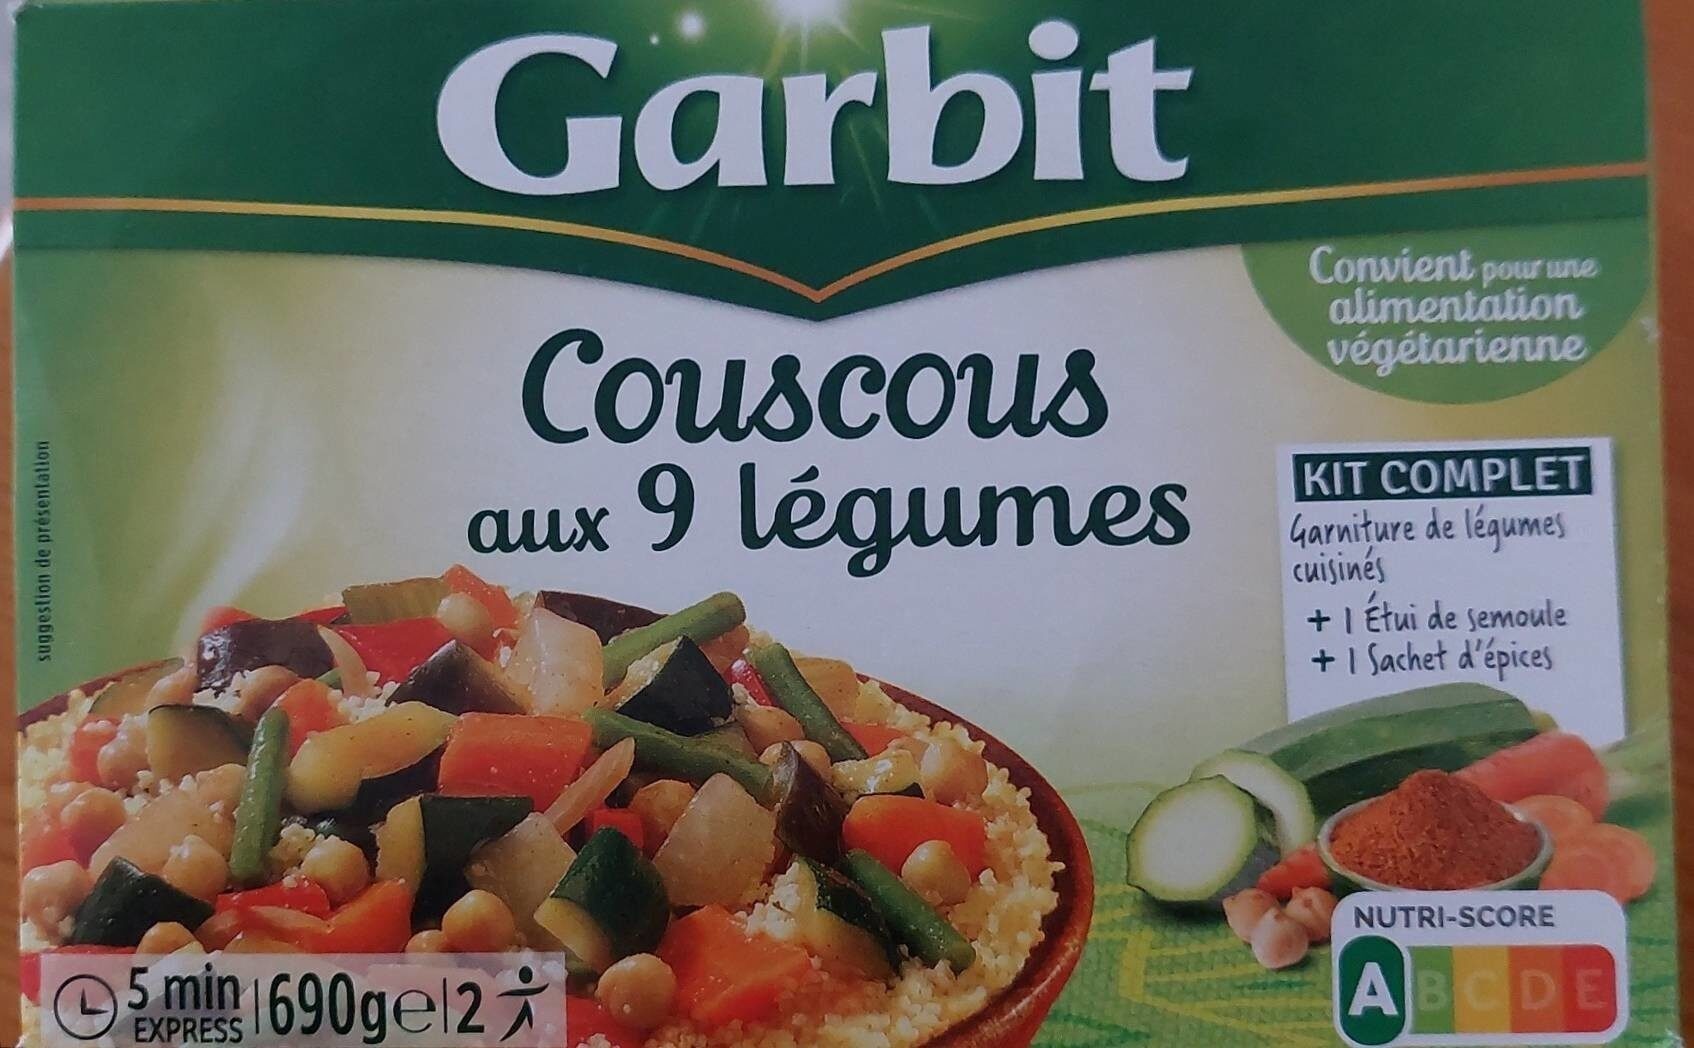 Couscous aux 9 légumes - Producto - fr